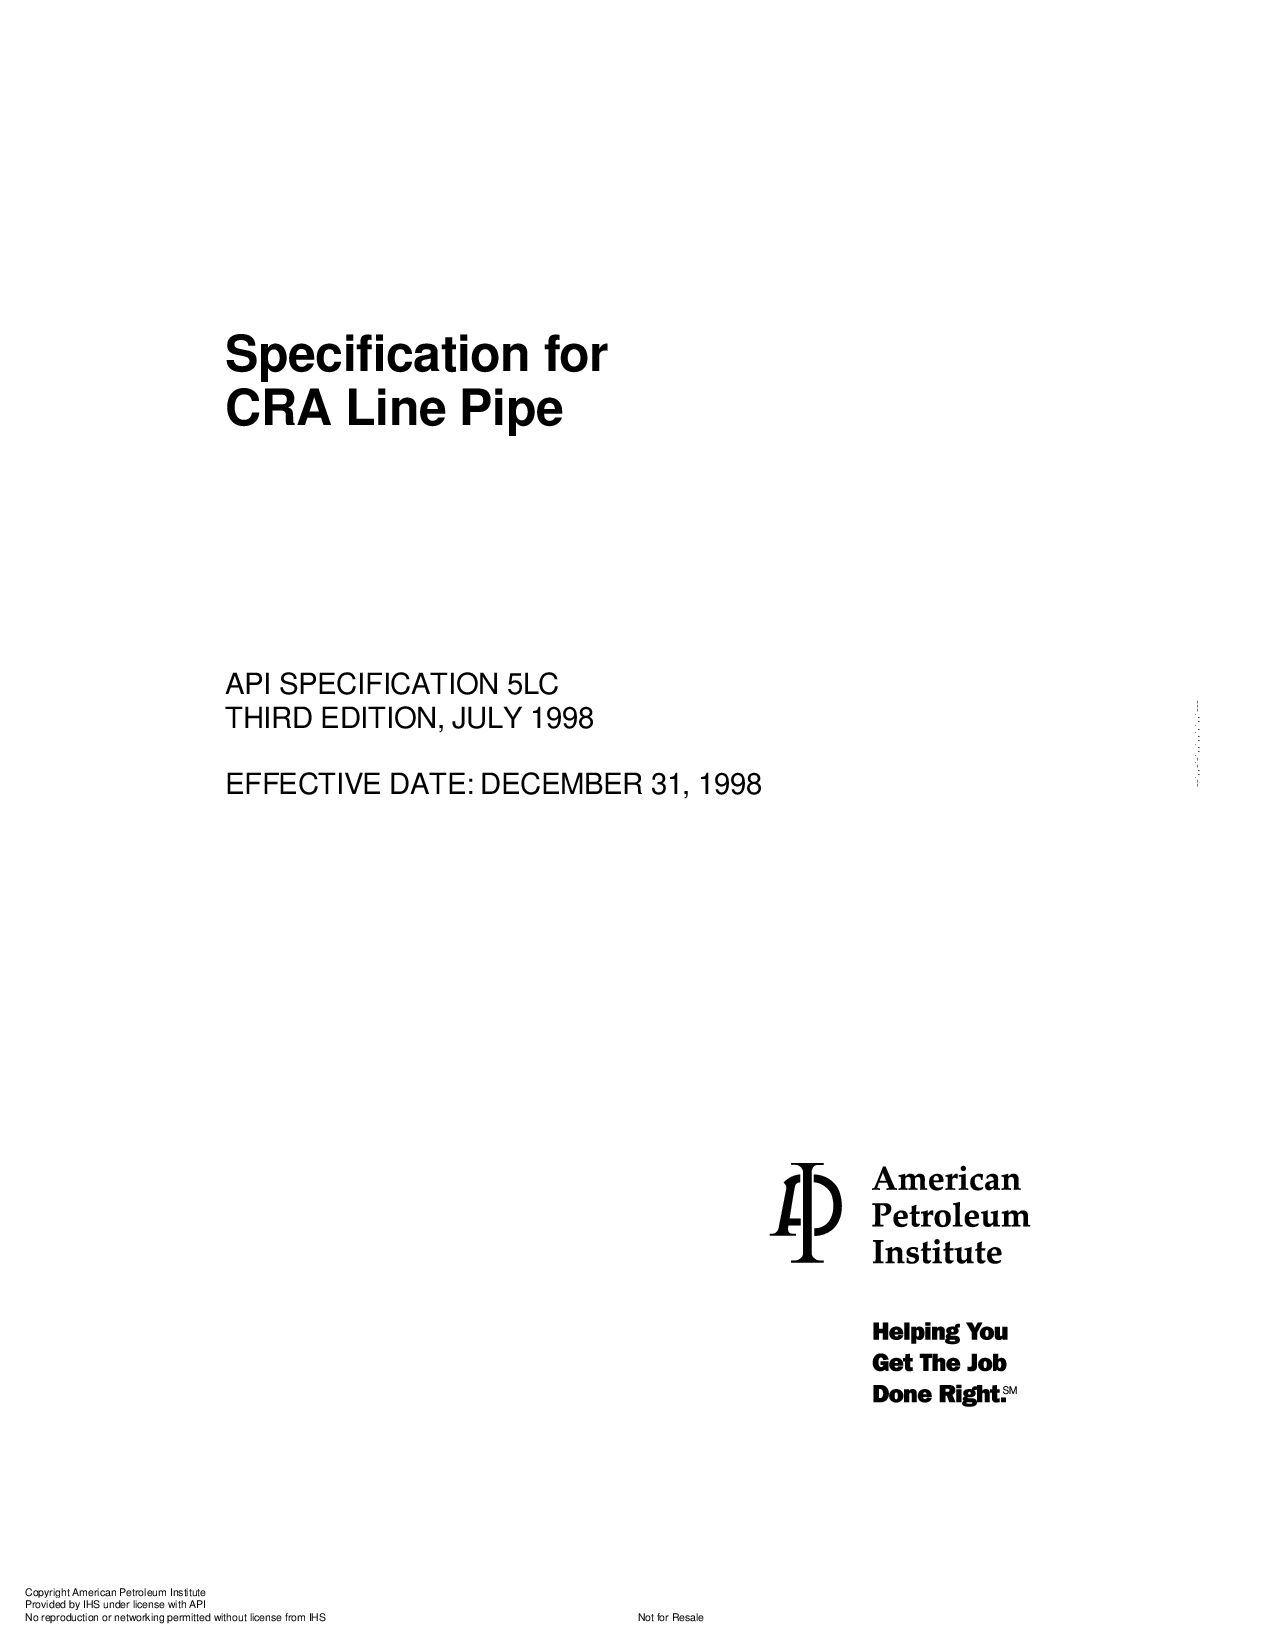 API SPEC 5LC-1998封面图